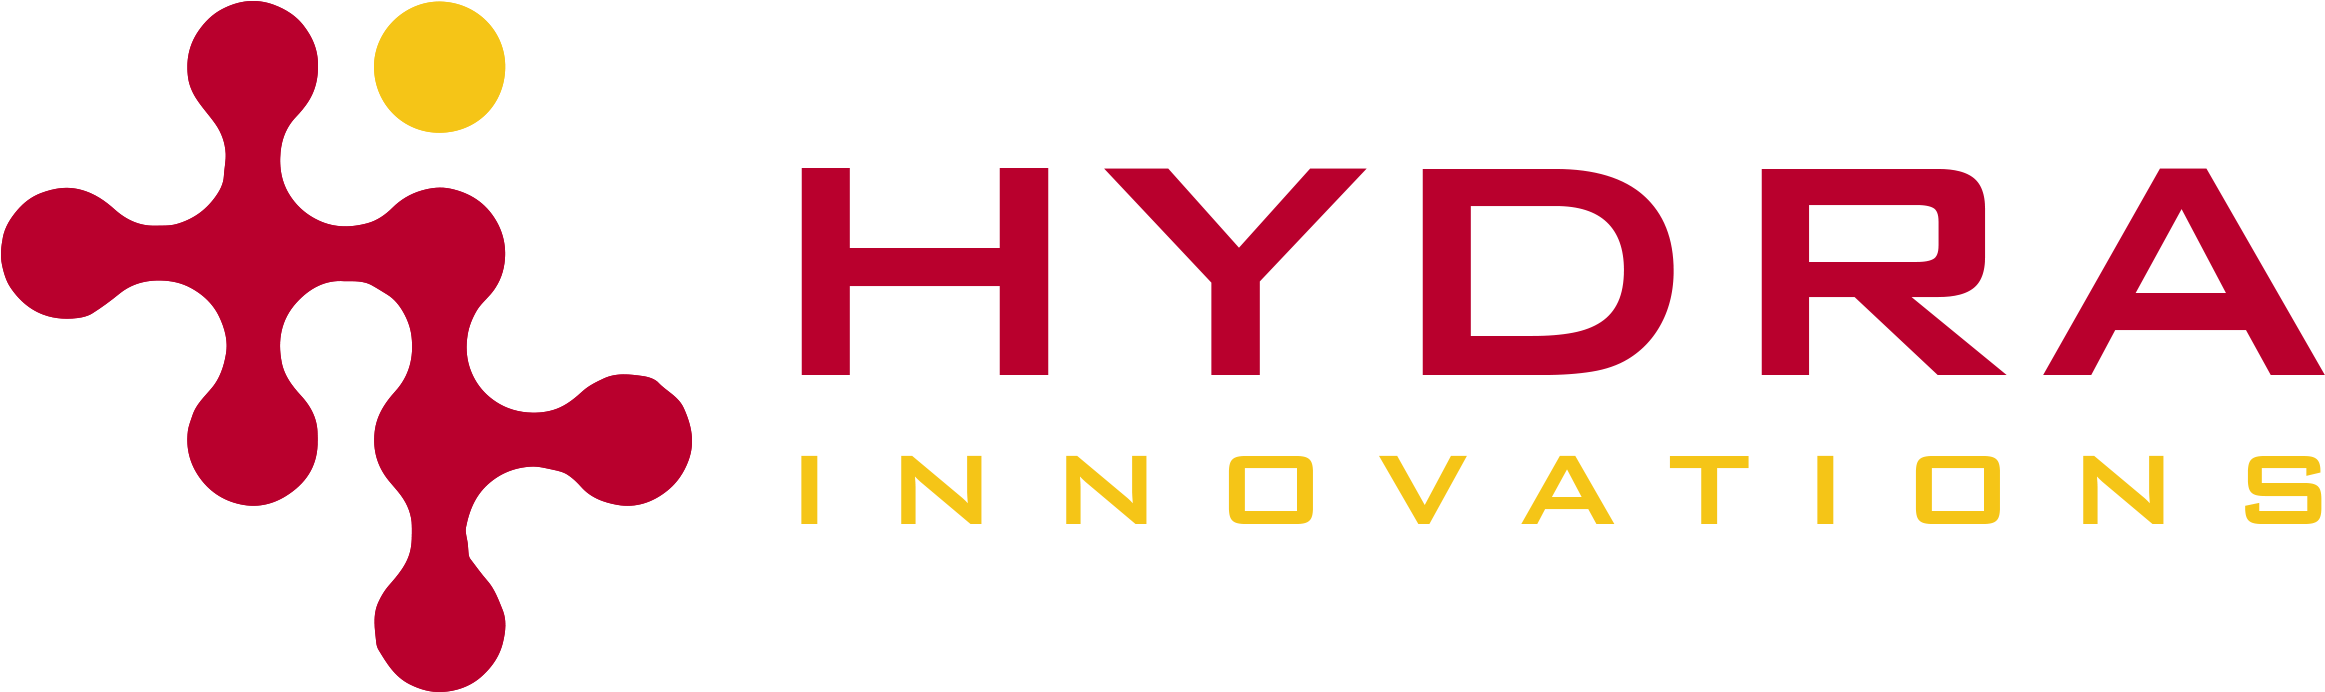 Hydra logo PNG imagen de alta calidad